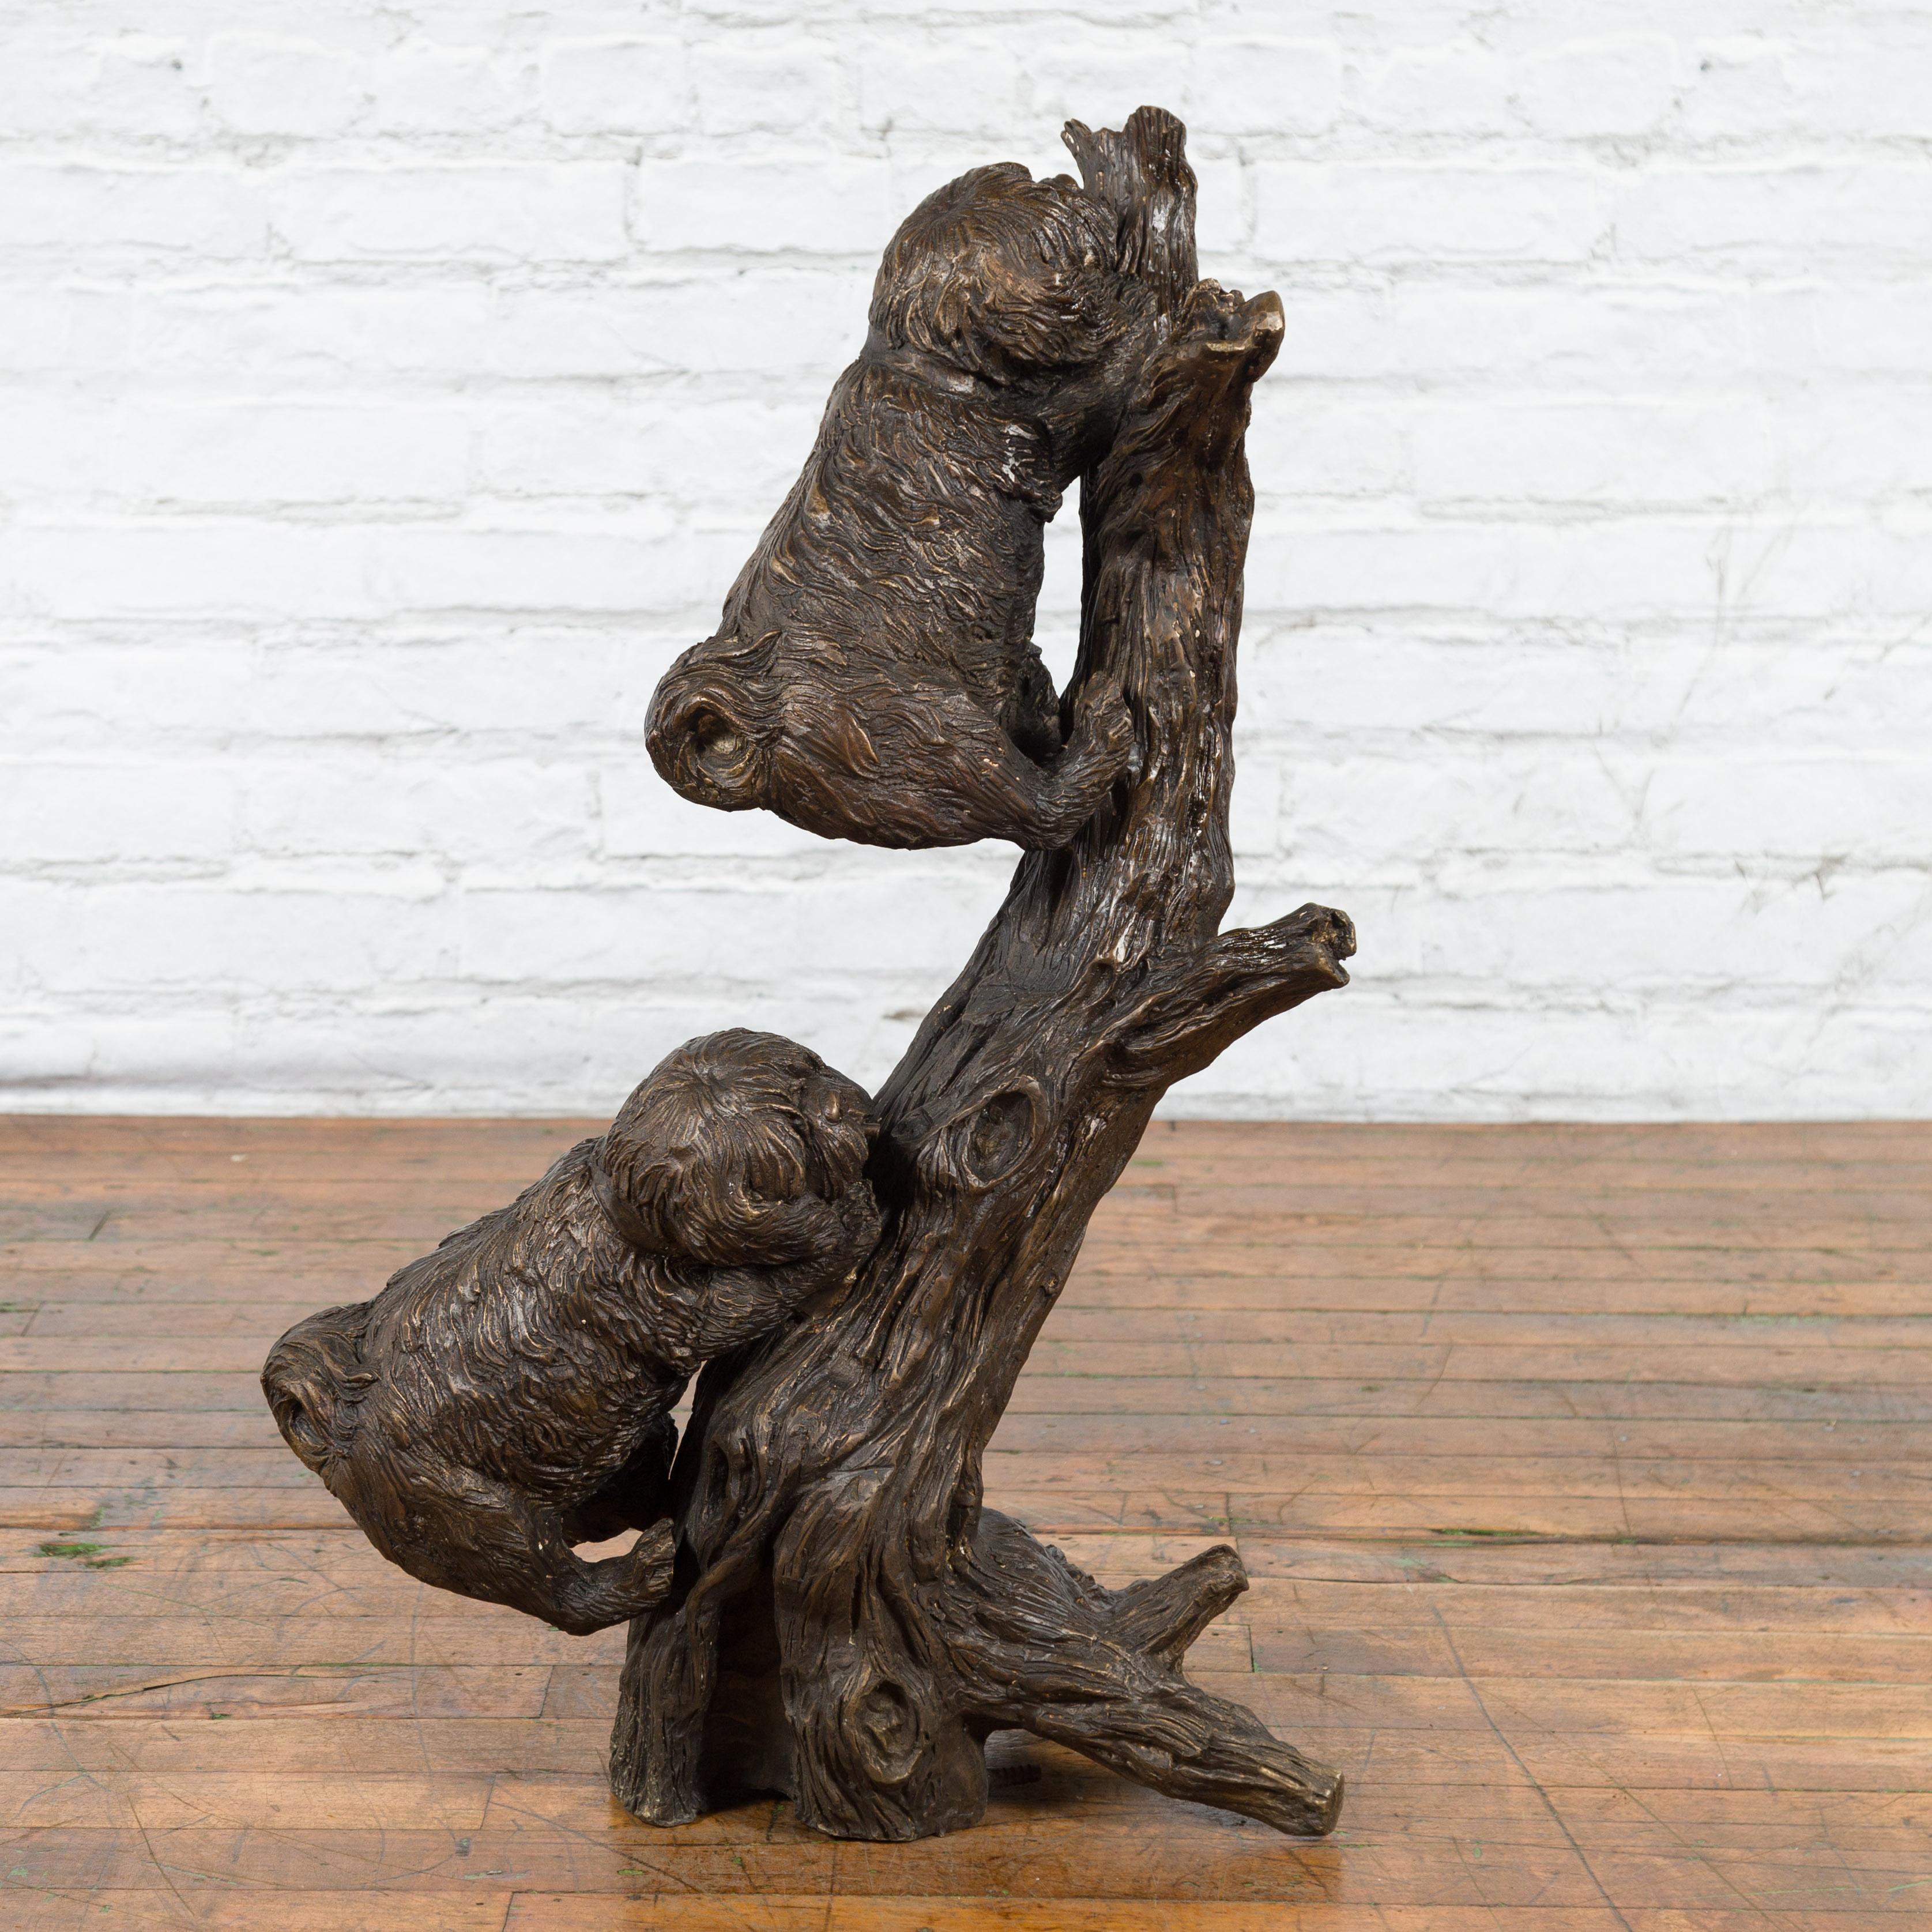 Eine zeitgenössische, in Wachsausschmelzverfahren gegossene Bronzeskulptur, die zwei Hunde darstellt, die auf einen Baum klettern, mit von Hand aufgetragener Bronzepatina. Diese skurrile Skulptur wurde mit der traditionellen Technik des verlorenen